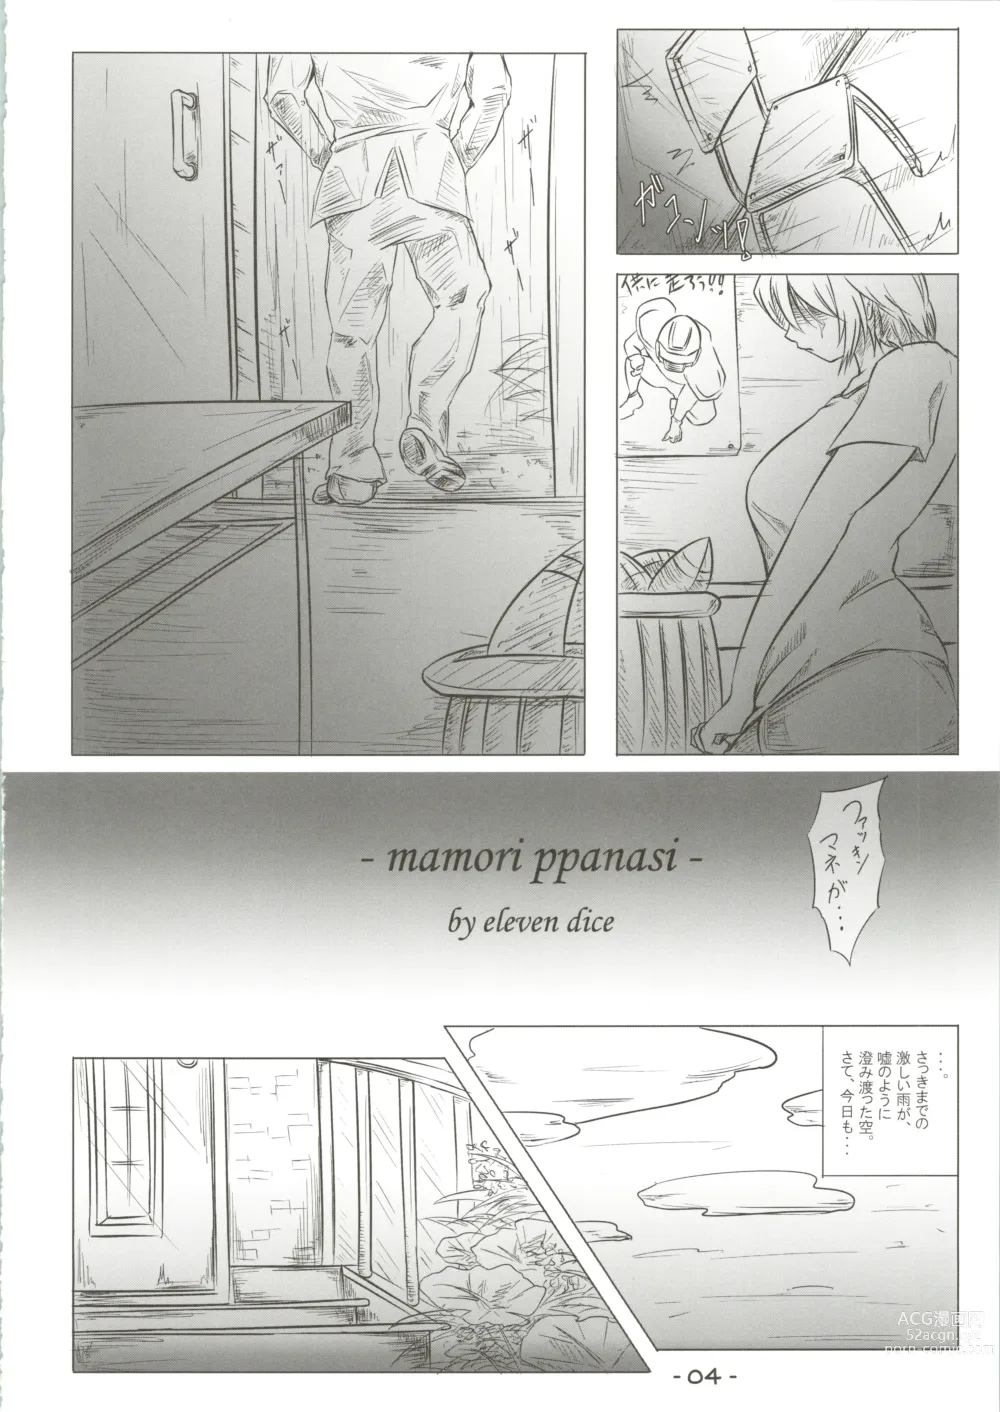 Page 4 of doujinshi Mamori ppanasi